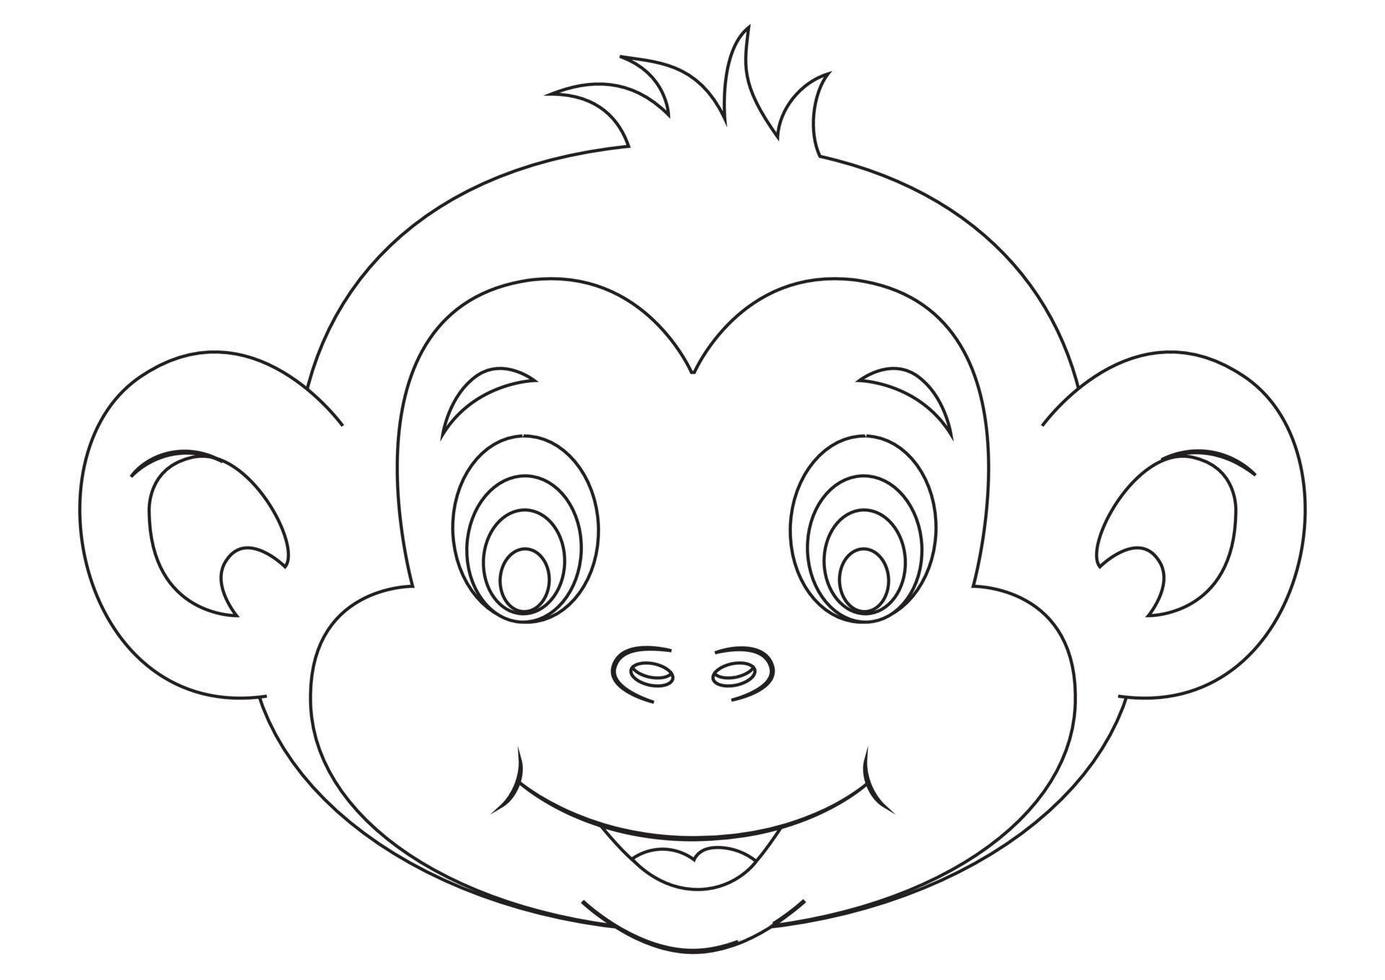 vetor preto e branco de cara de macaco fofo